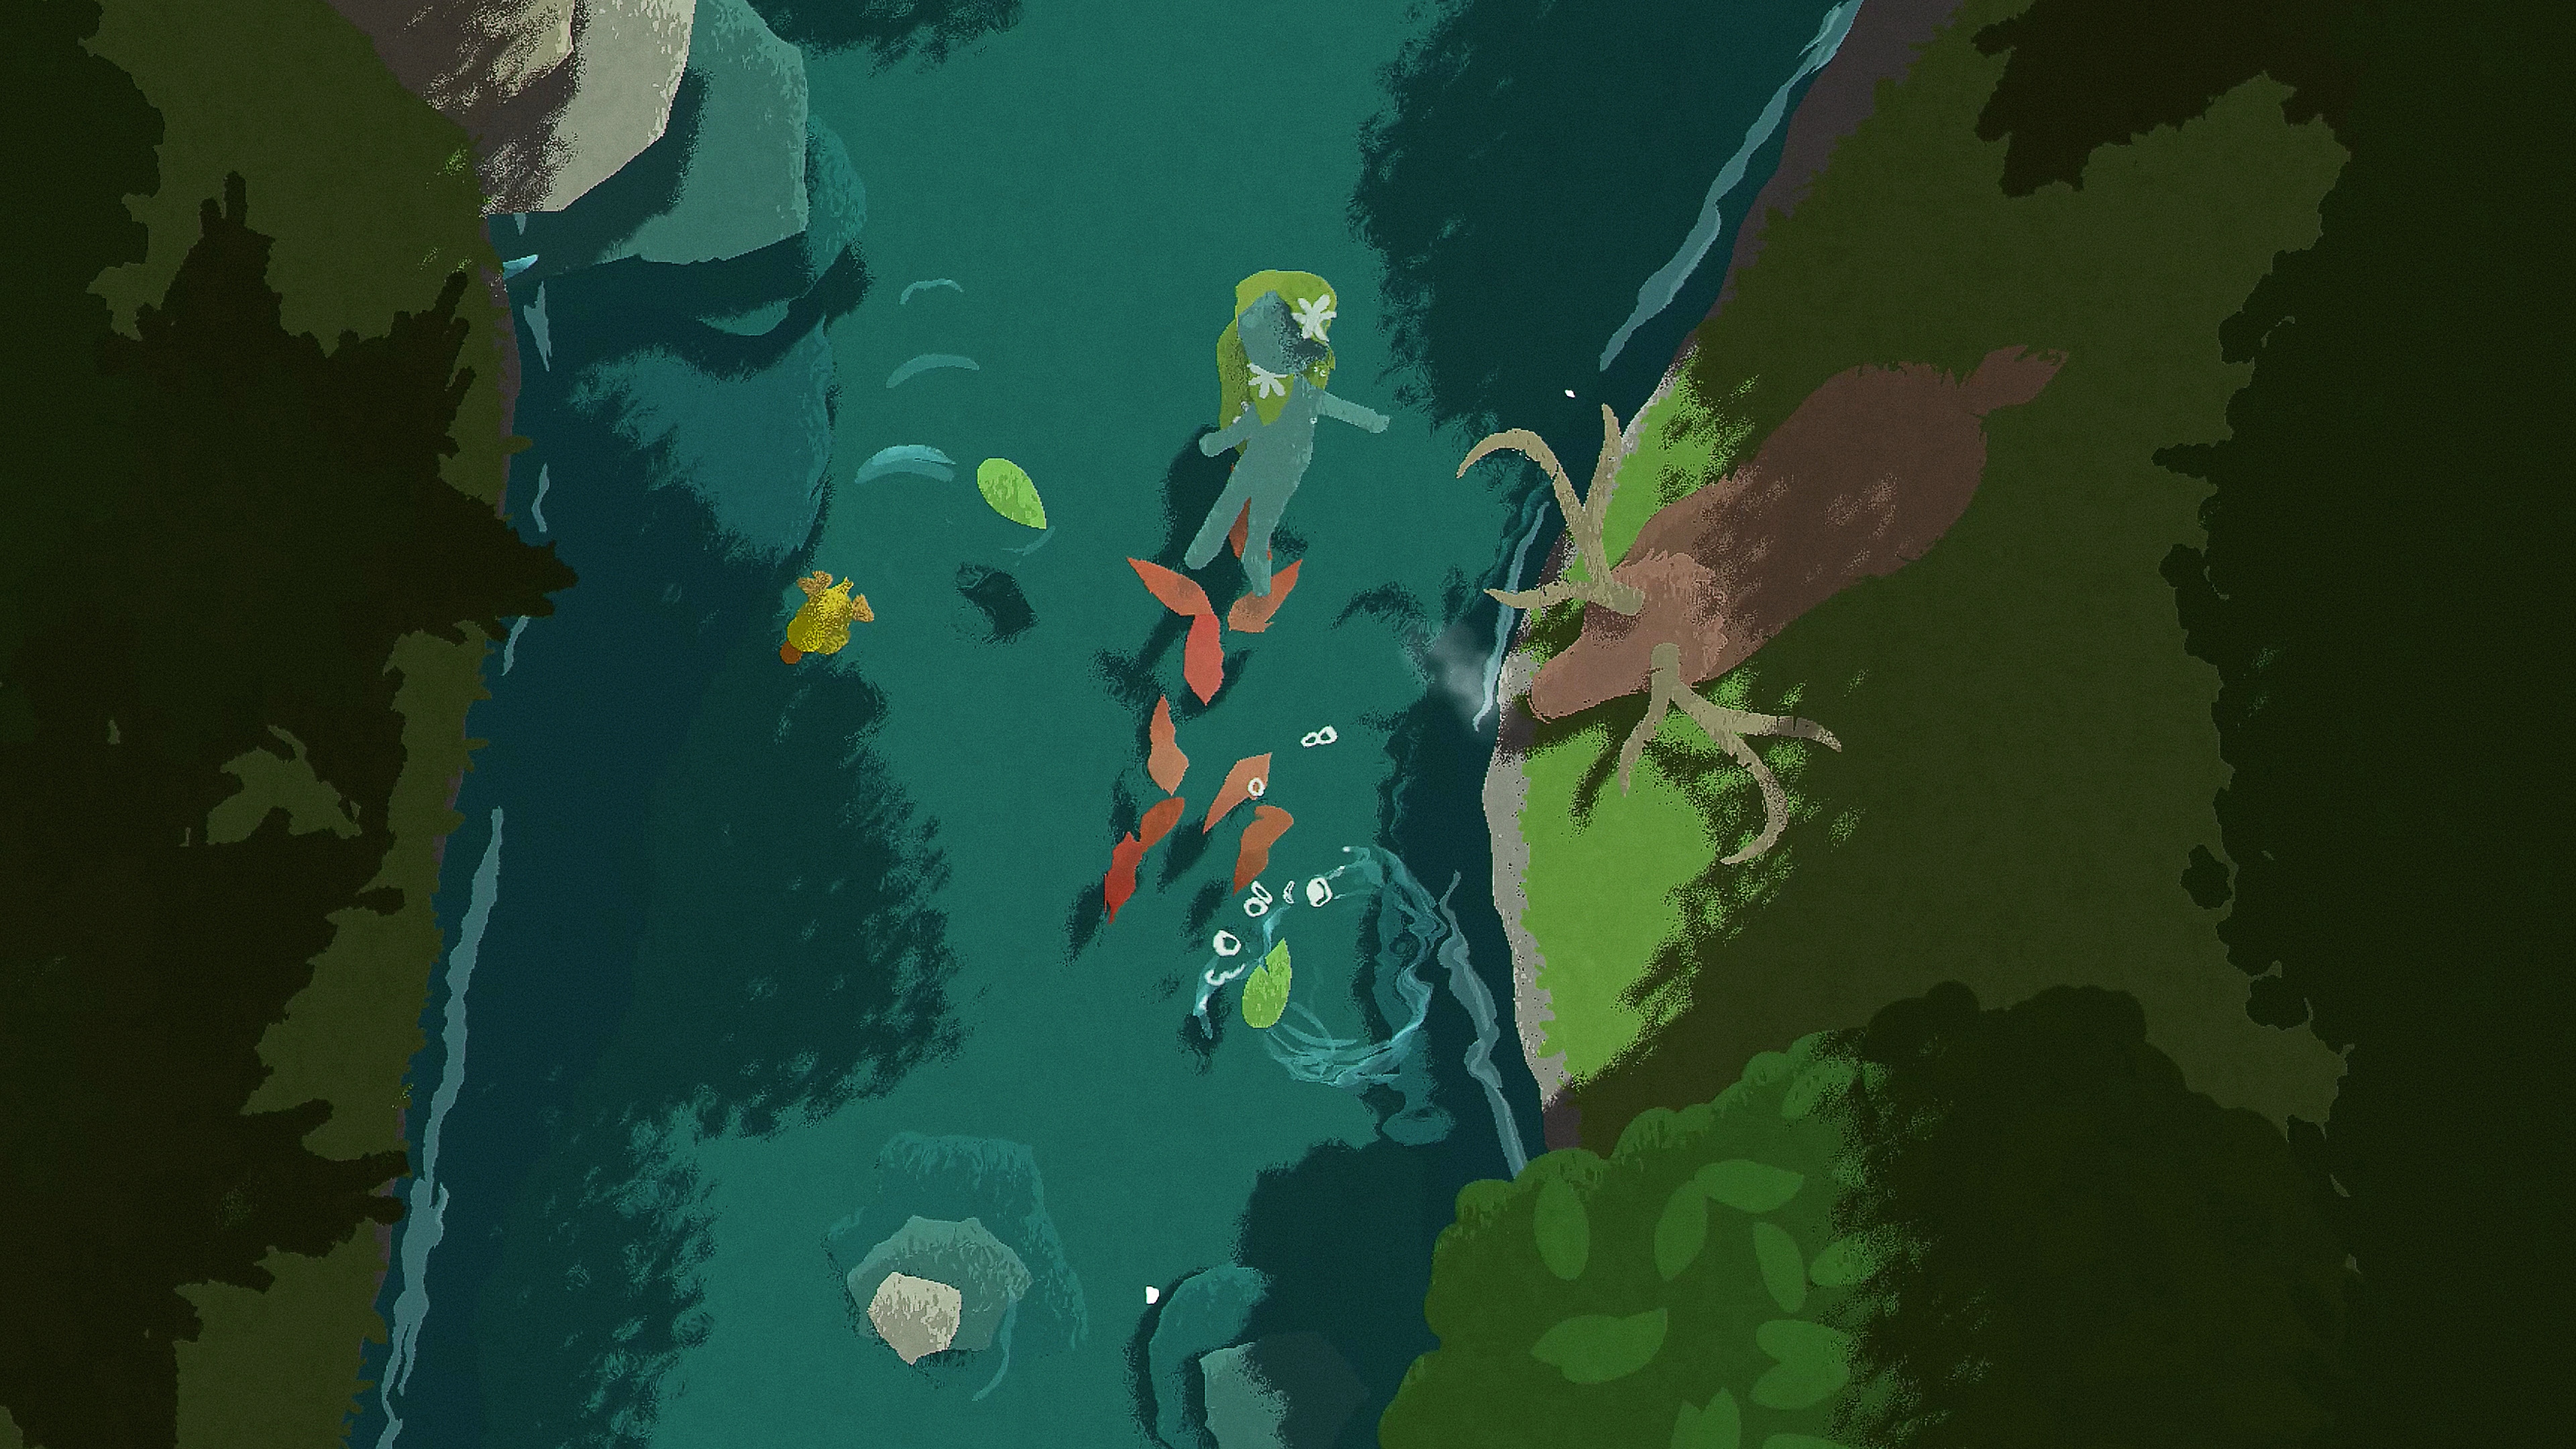 Naiad-képernyőkép, amelyen egy karakter lebeg lefelé a folyón, miközben egy szarvas áll a parton